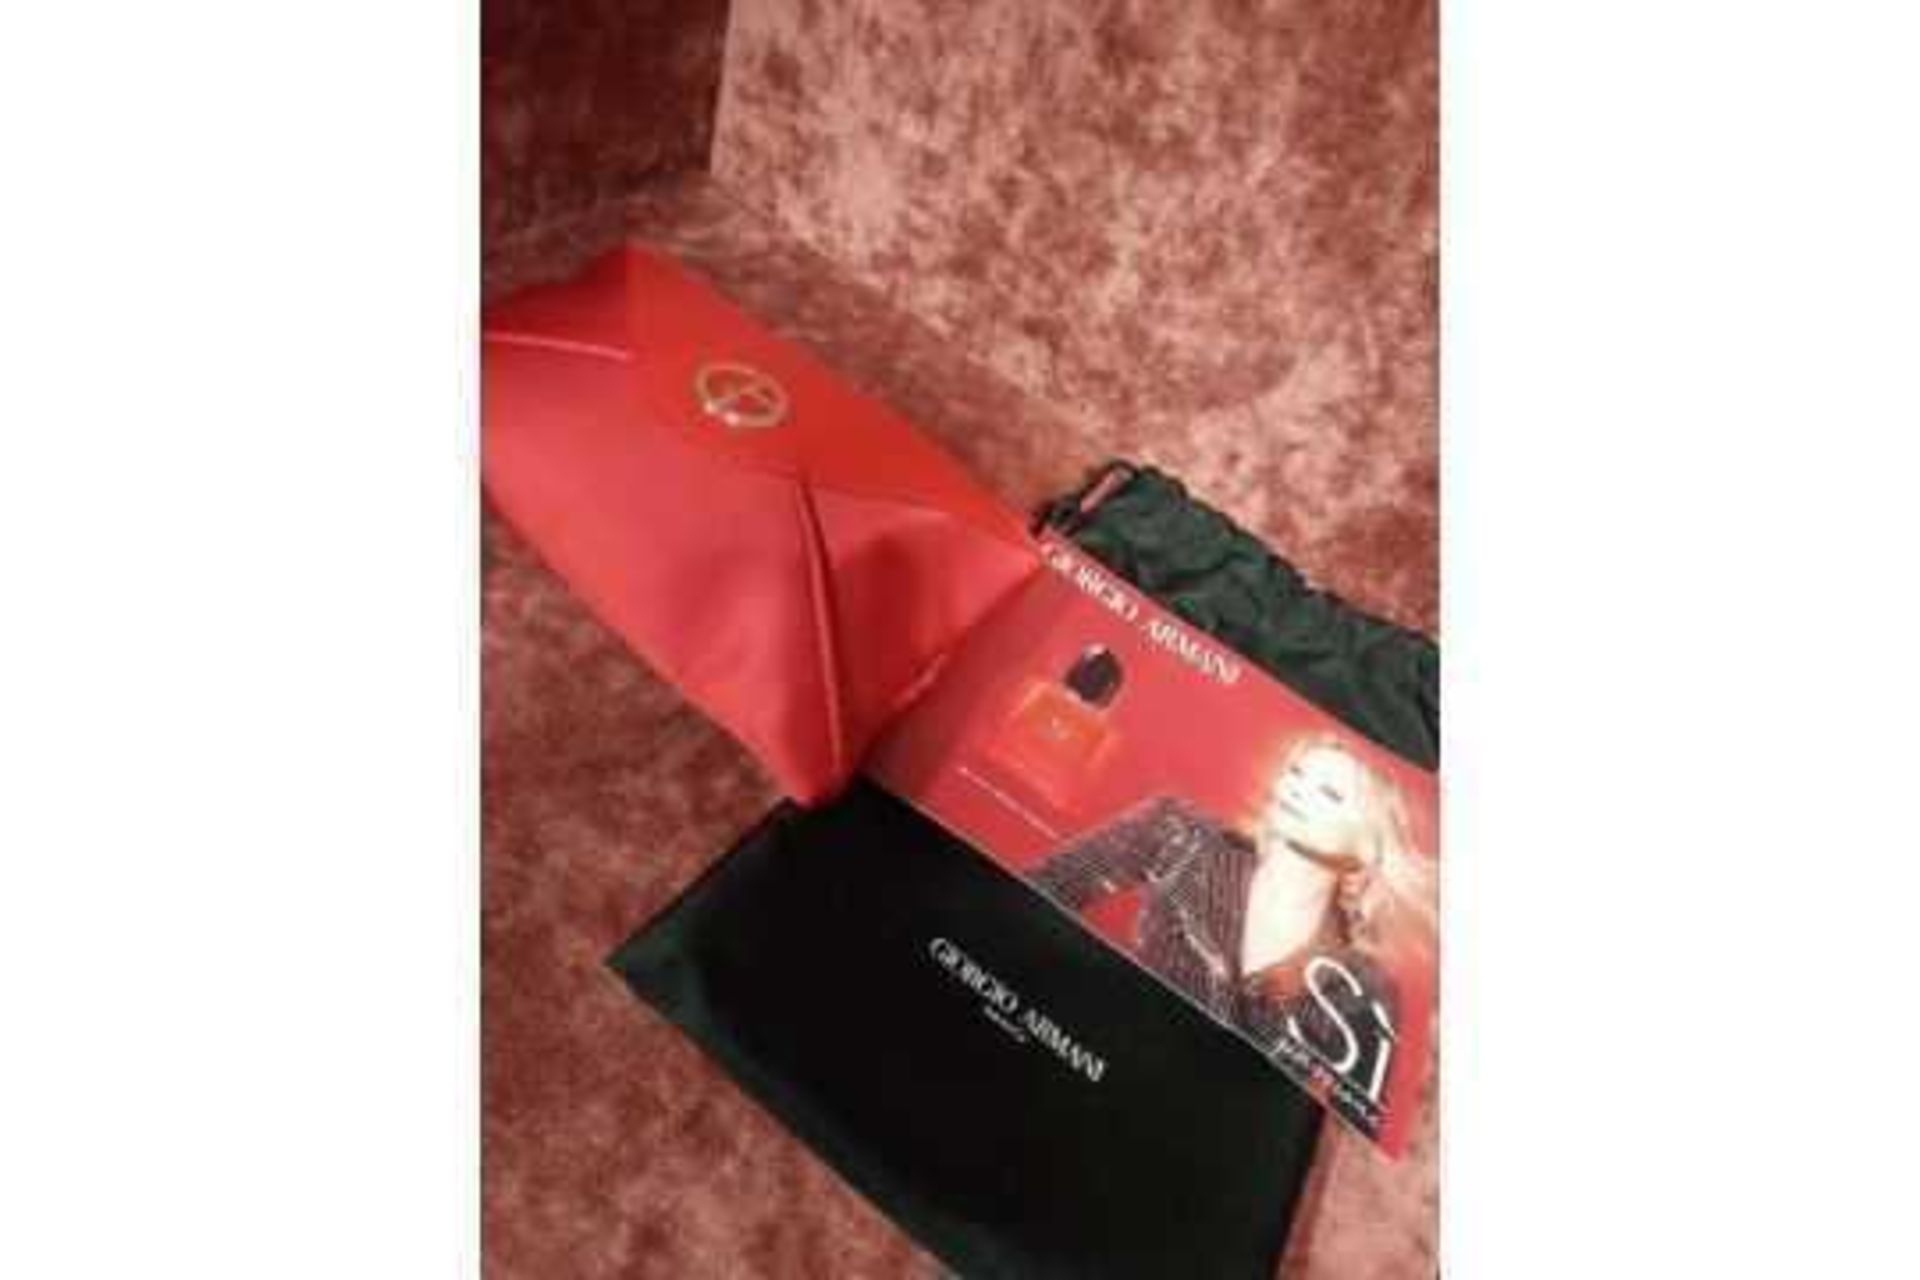 RRP £70 Brand New Giorgio Armani Beauty Si Passione Intense Gift Set To Contain Giorgio Armani Red P - Image 2 of 4